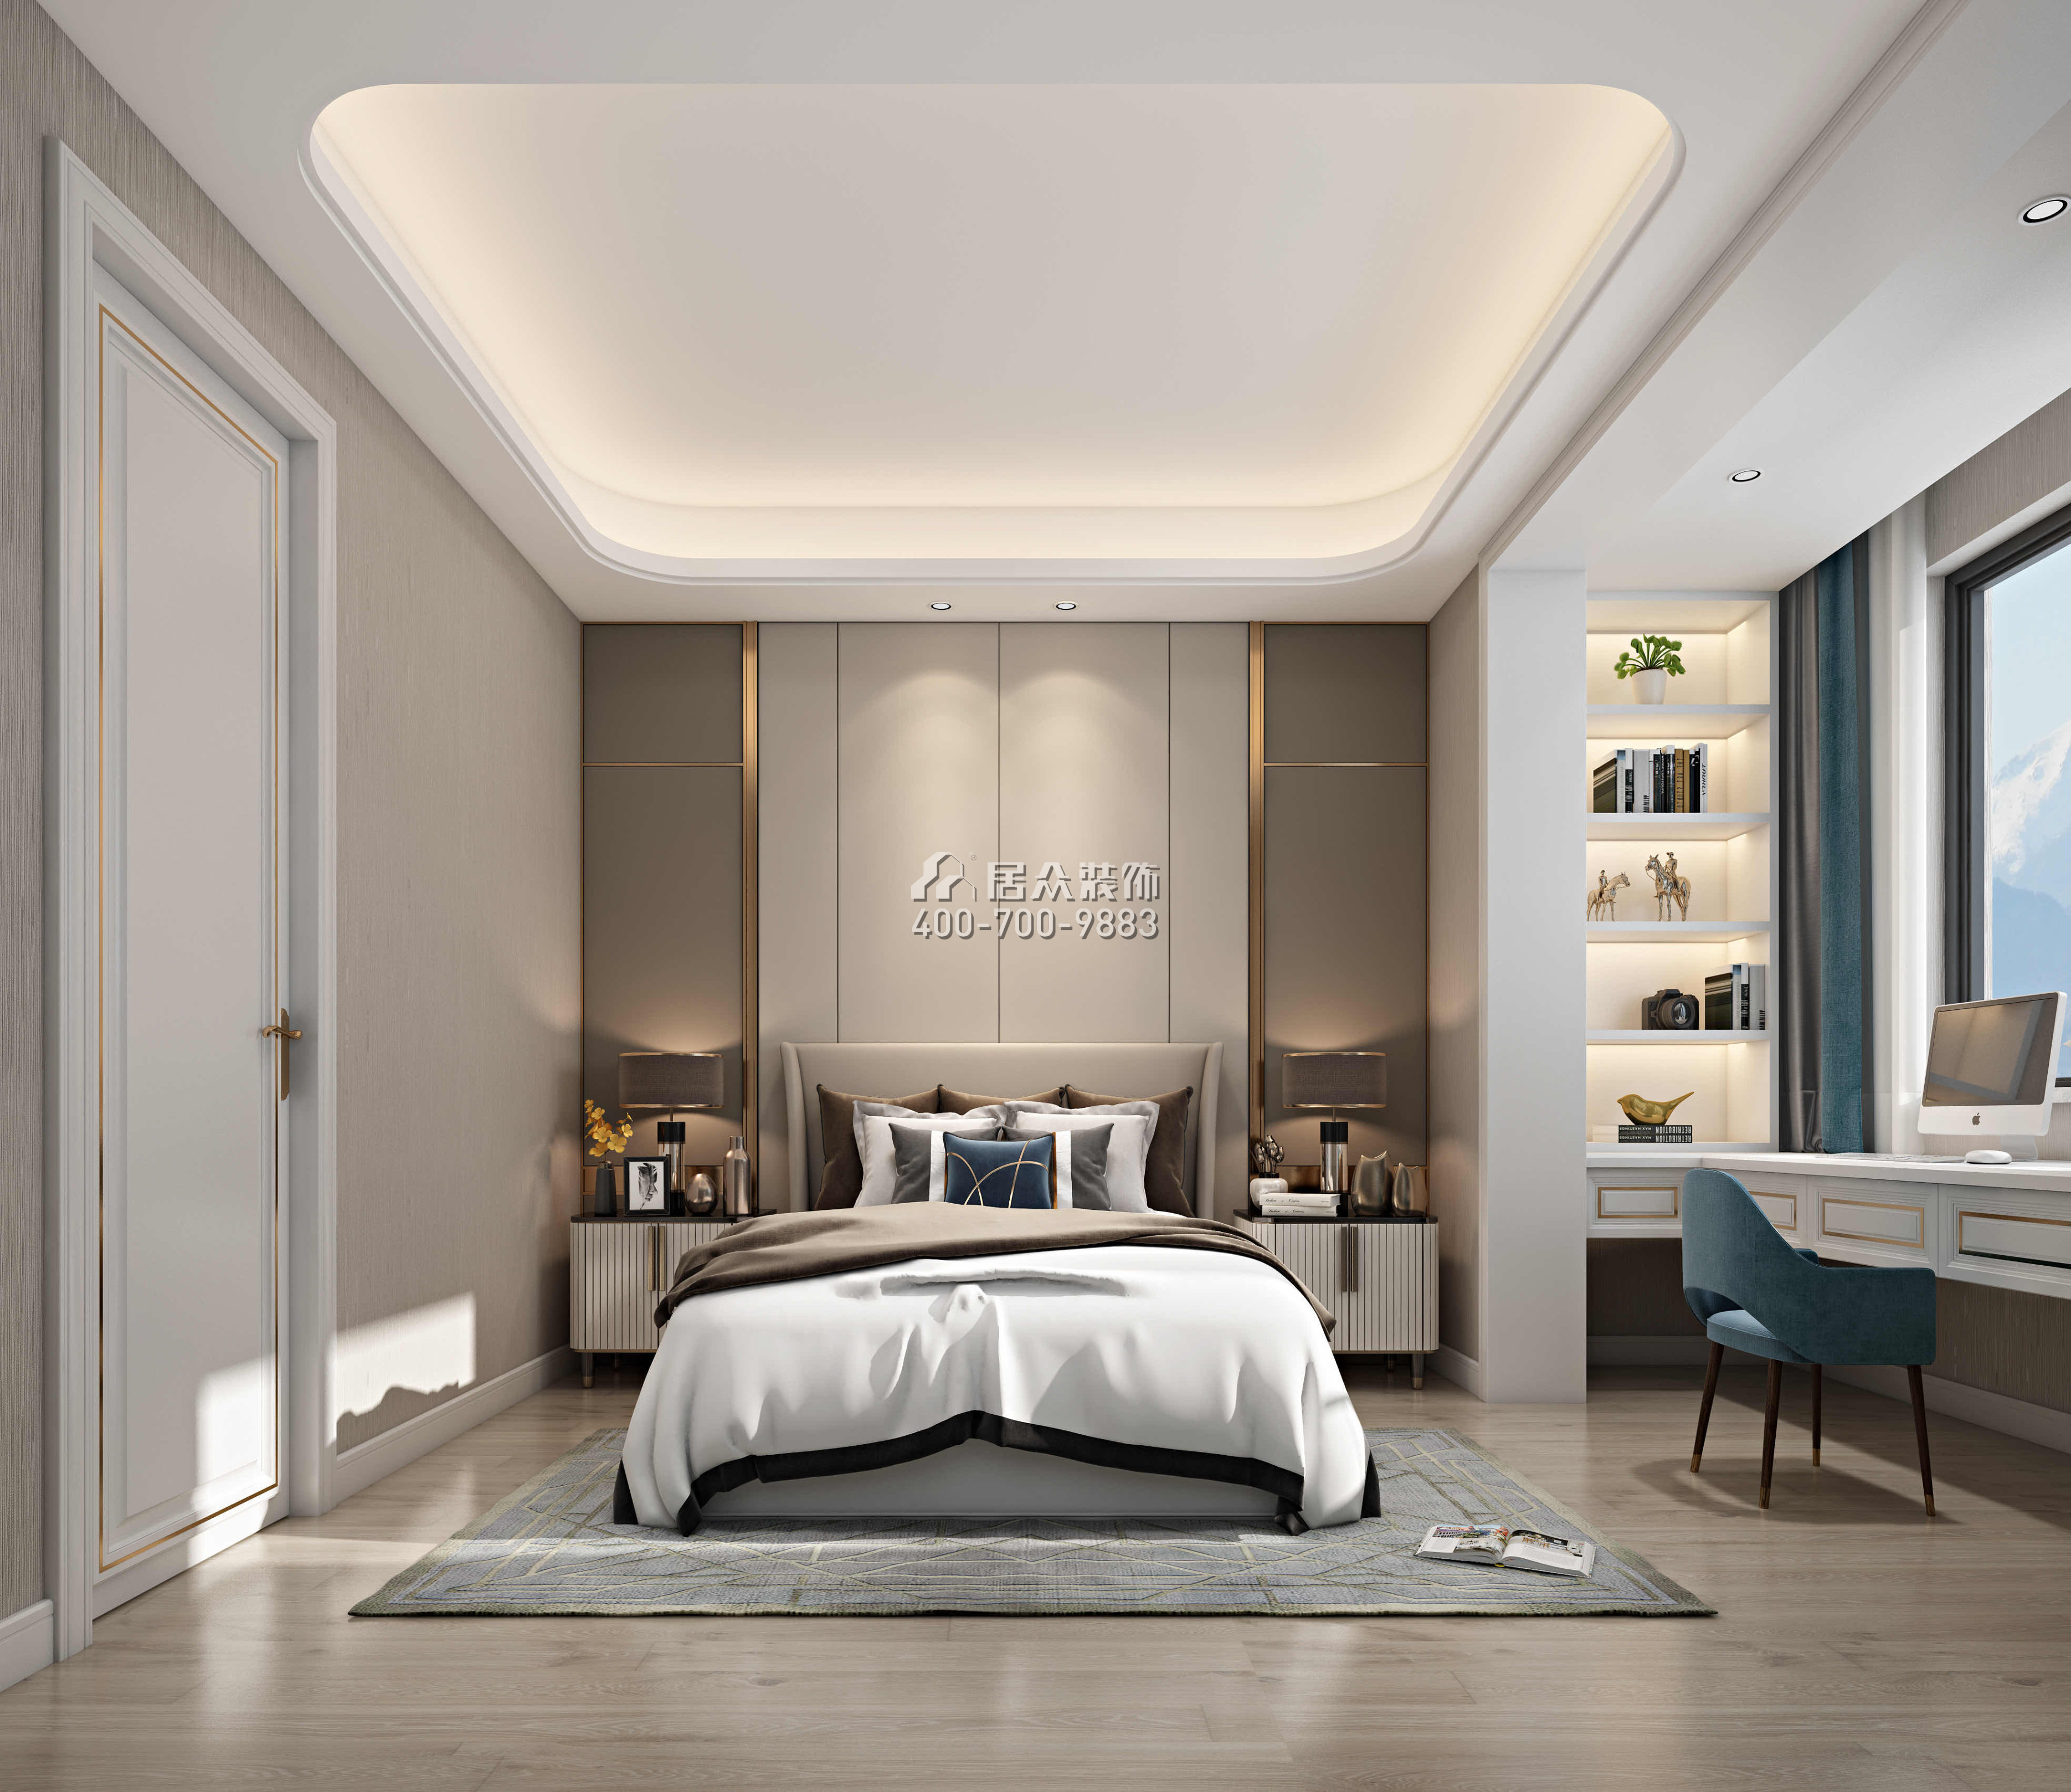 香蜜湖一号340平方米现代简约风格平层户型卧室装修效果图